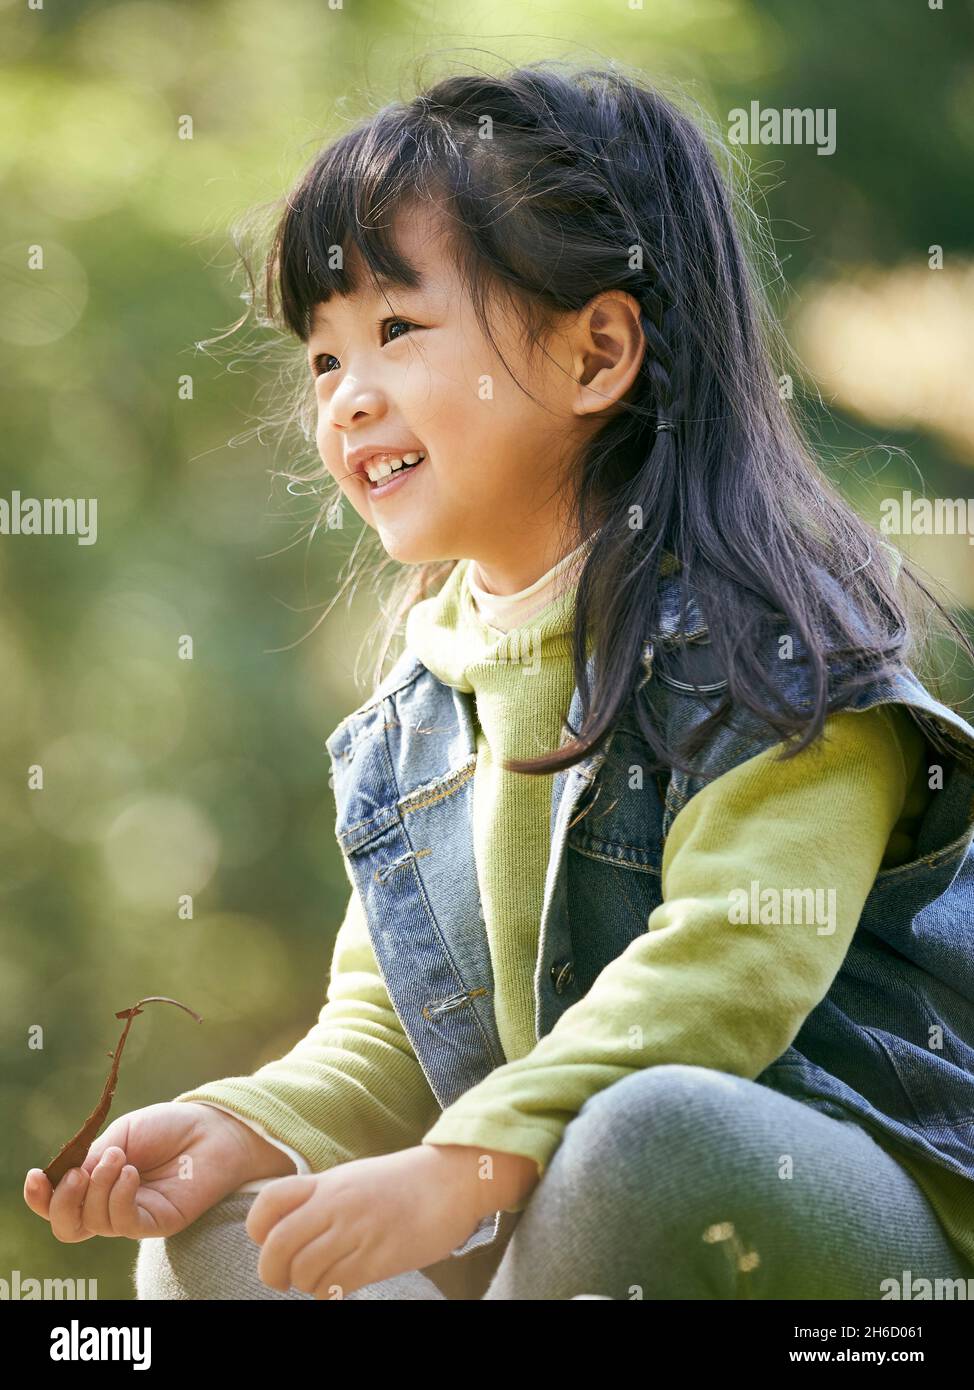 ritratto all'aperto di una bambina asiatica seduta su erba felice e sorridente Foto Stock